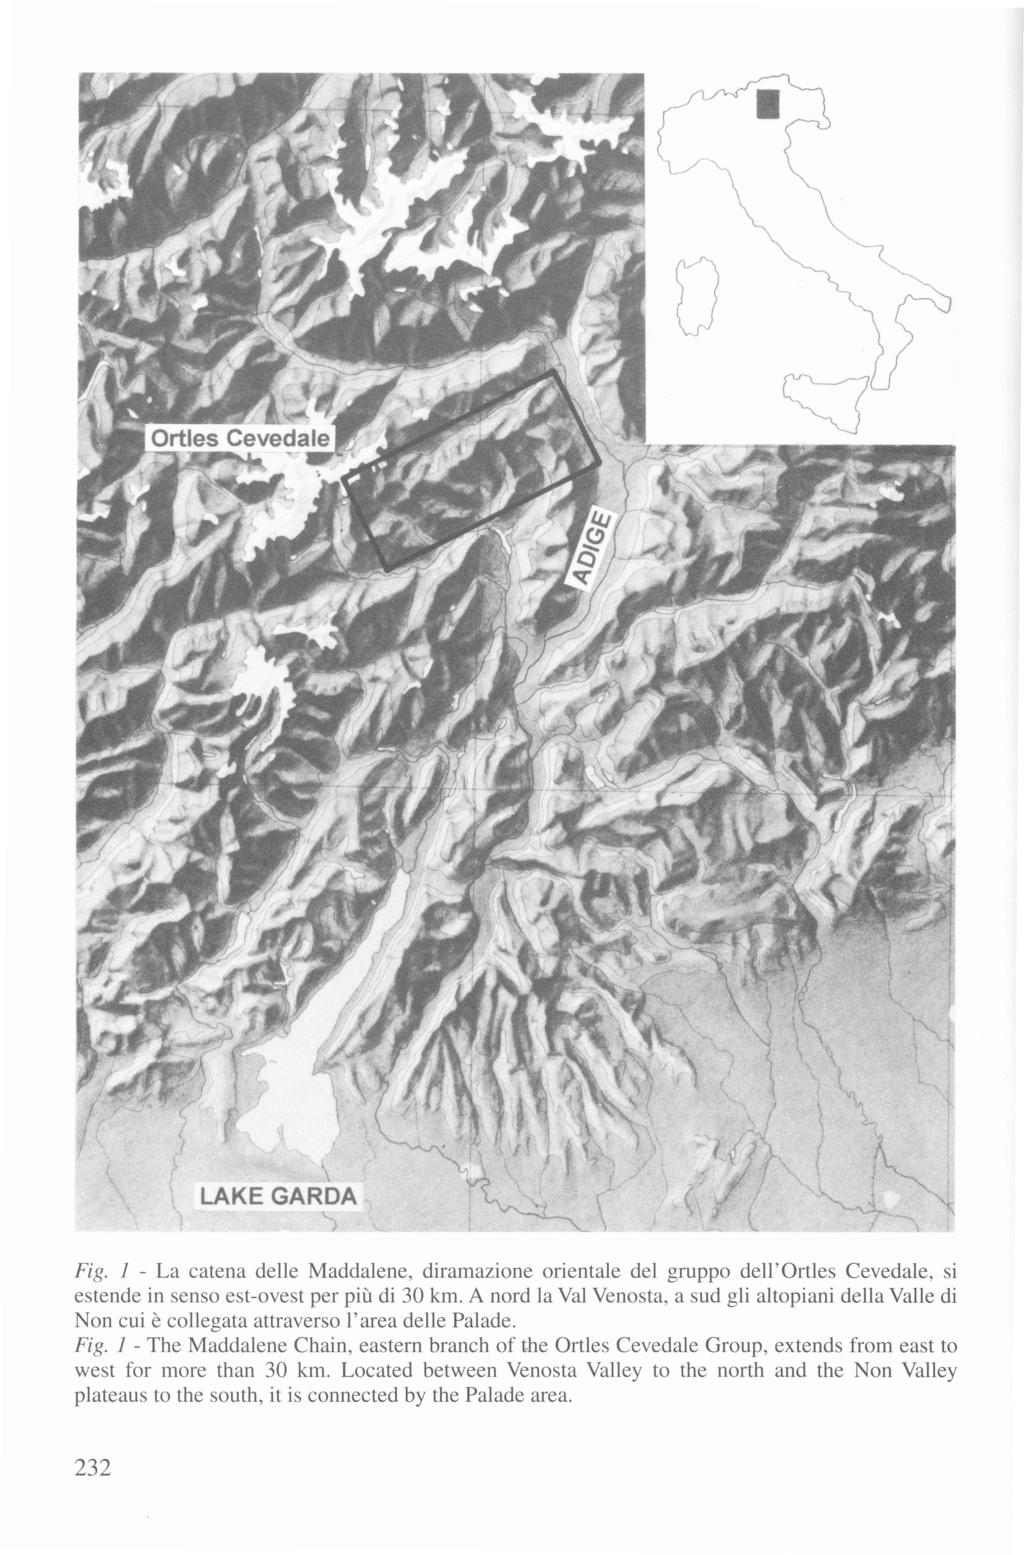 Fig. 1 - La catena delle Maddalene, diramazione orientale del gruppo dell' Ortles Cevedale, si estende in senso est-ovest per più di 30 km.